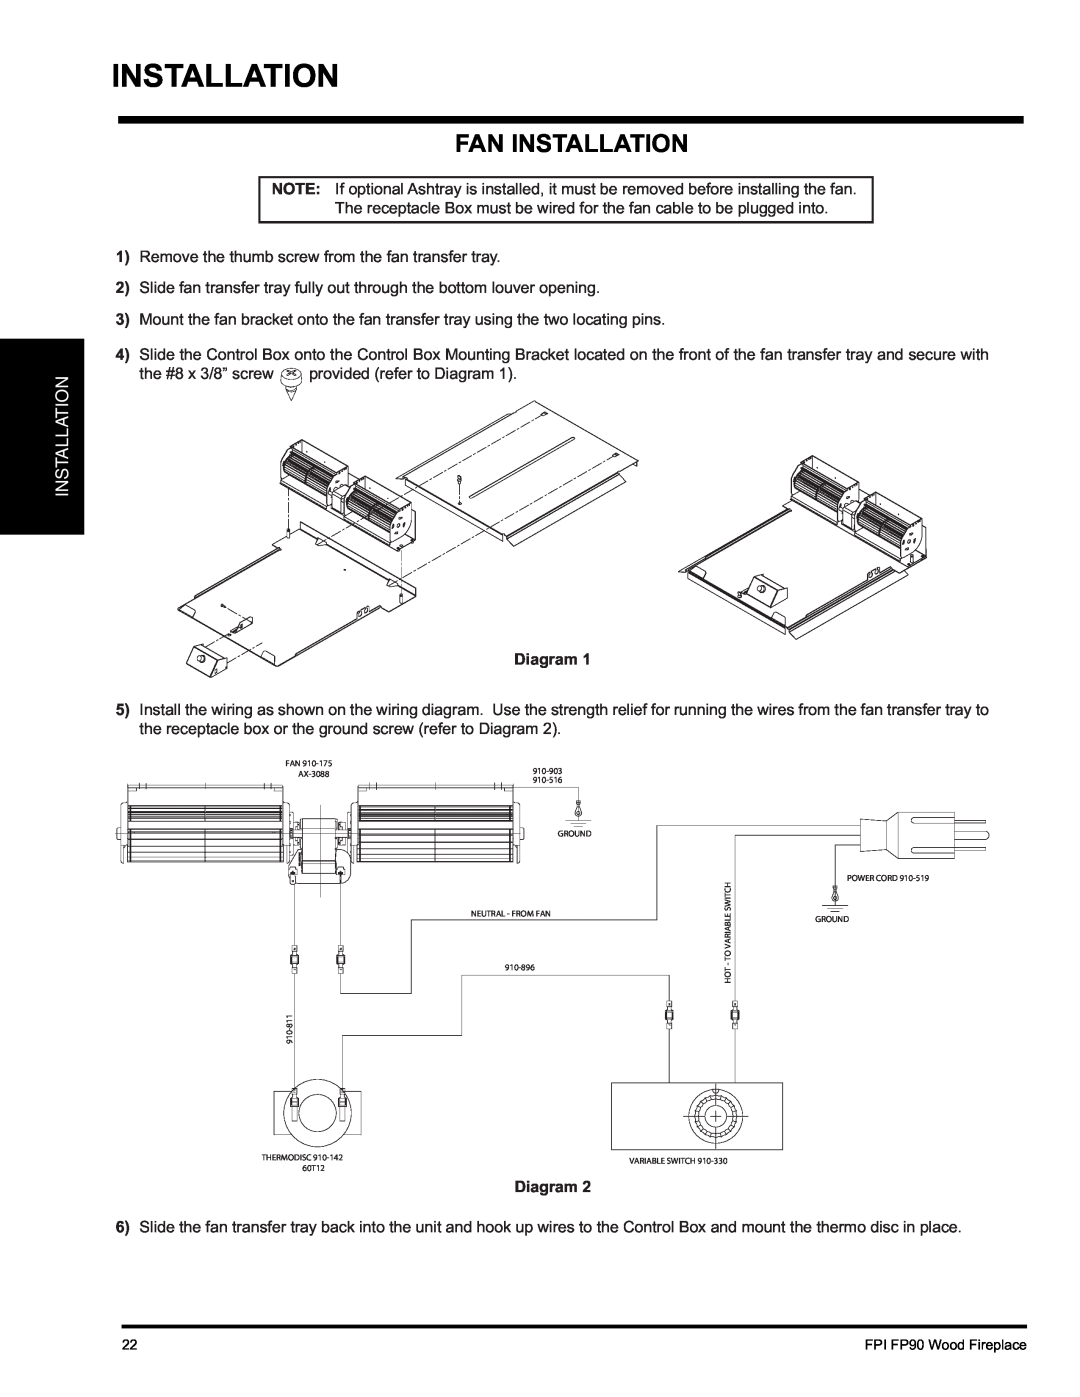 Regency FP90 installation manual Fan Installation, Diagram 